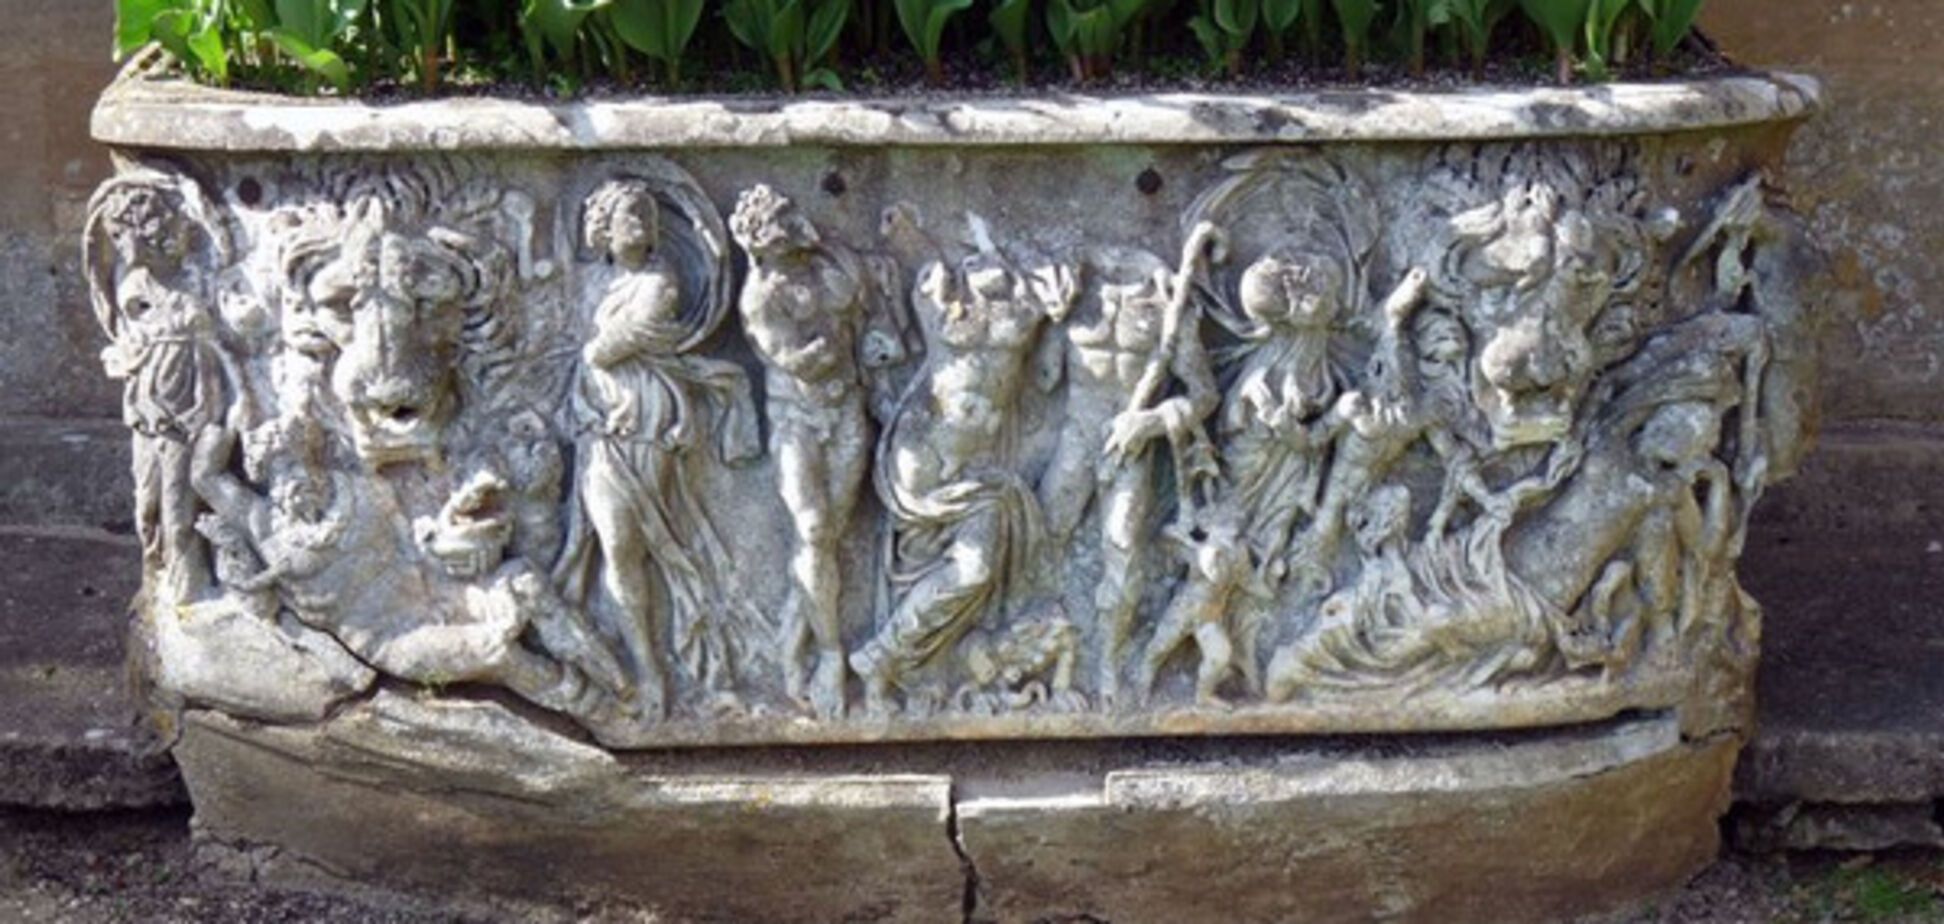 давньоримський саркофаг, який використовували як квіткар